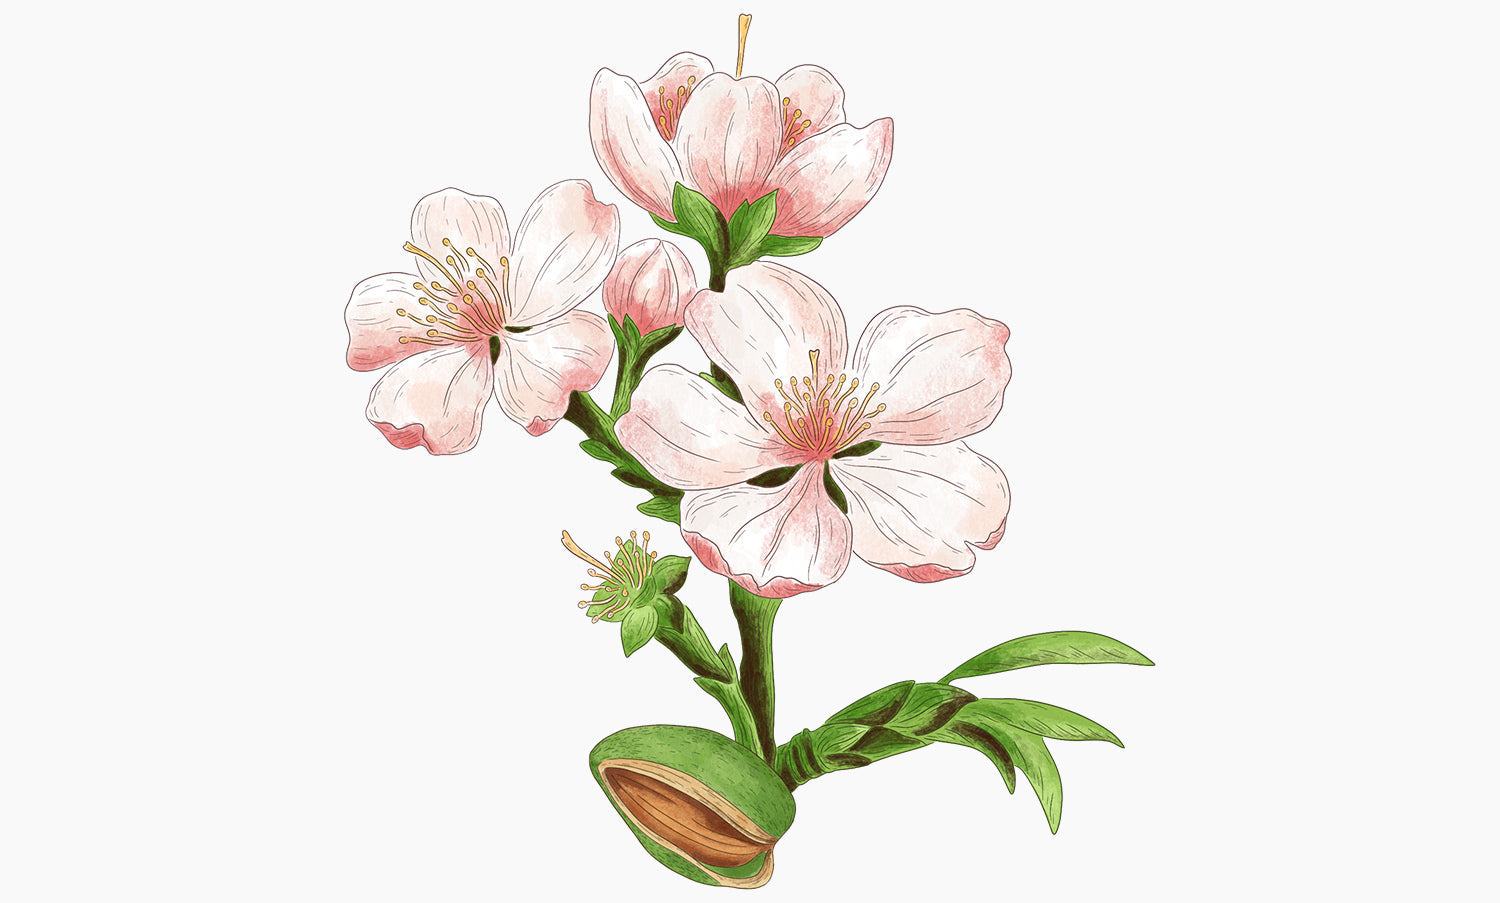 Amandier doux | Prunus amygdalus dulcis